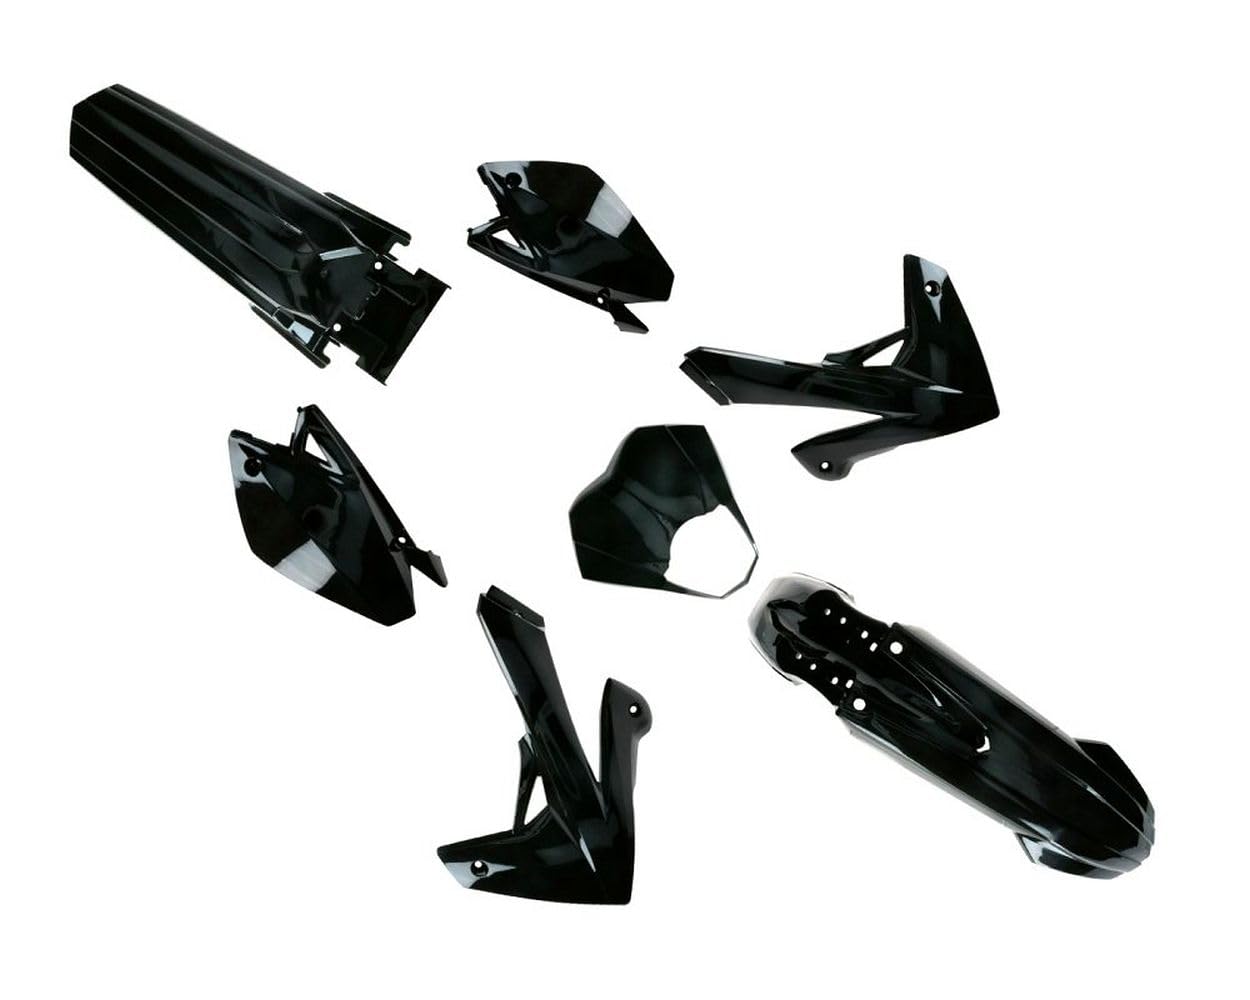 2EXTREME Verkleidungskit komplett schwarz kompatibel für Rieju MRT, Schaltmoped, Mofa, Moped, 2-Takt, LC von 2EXTREME